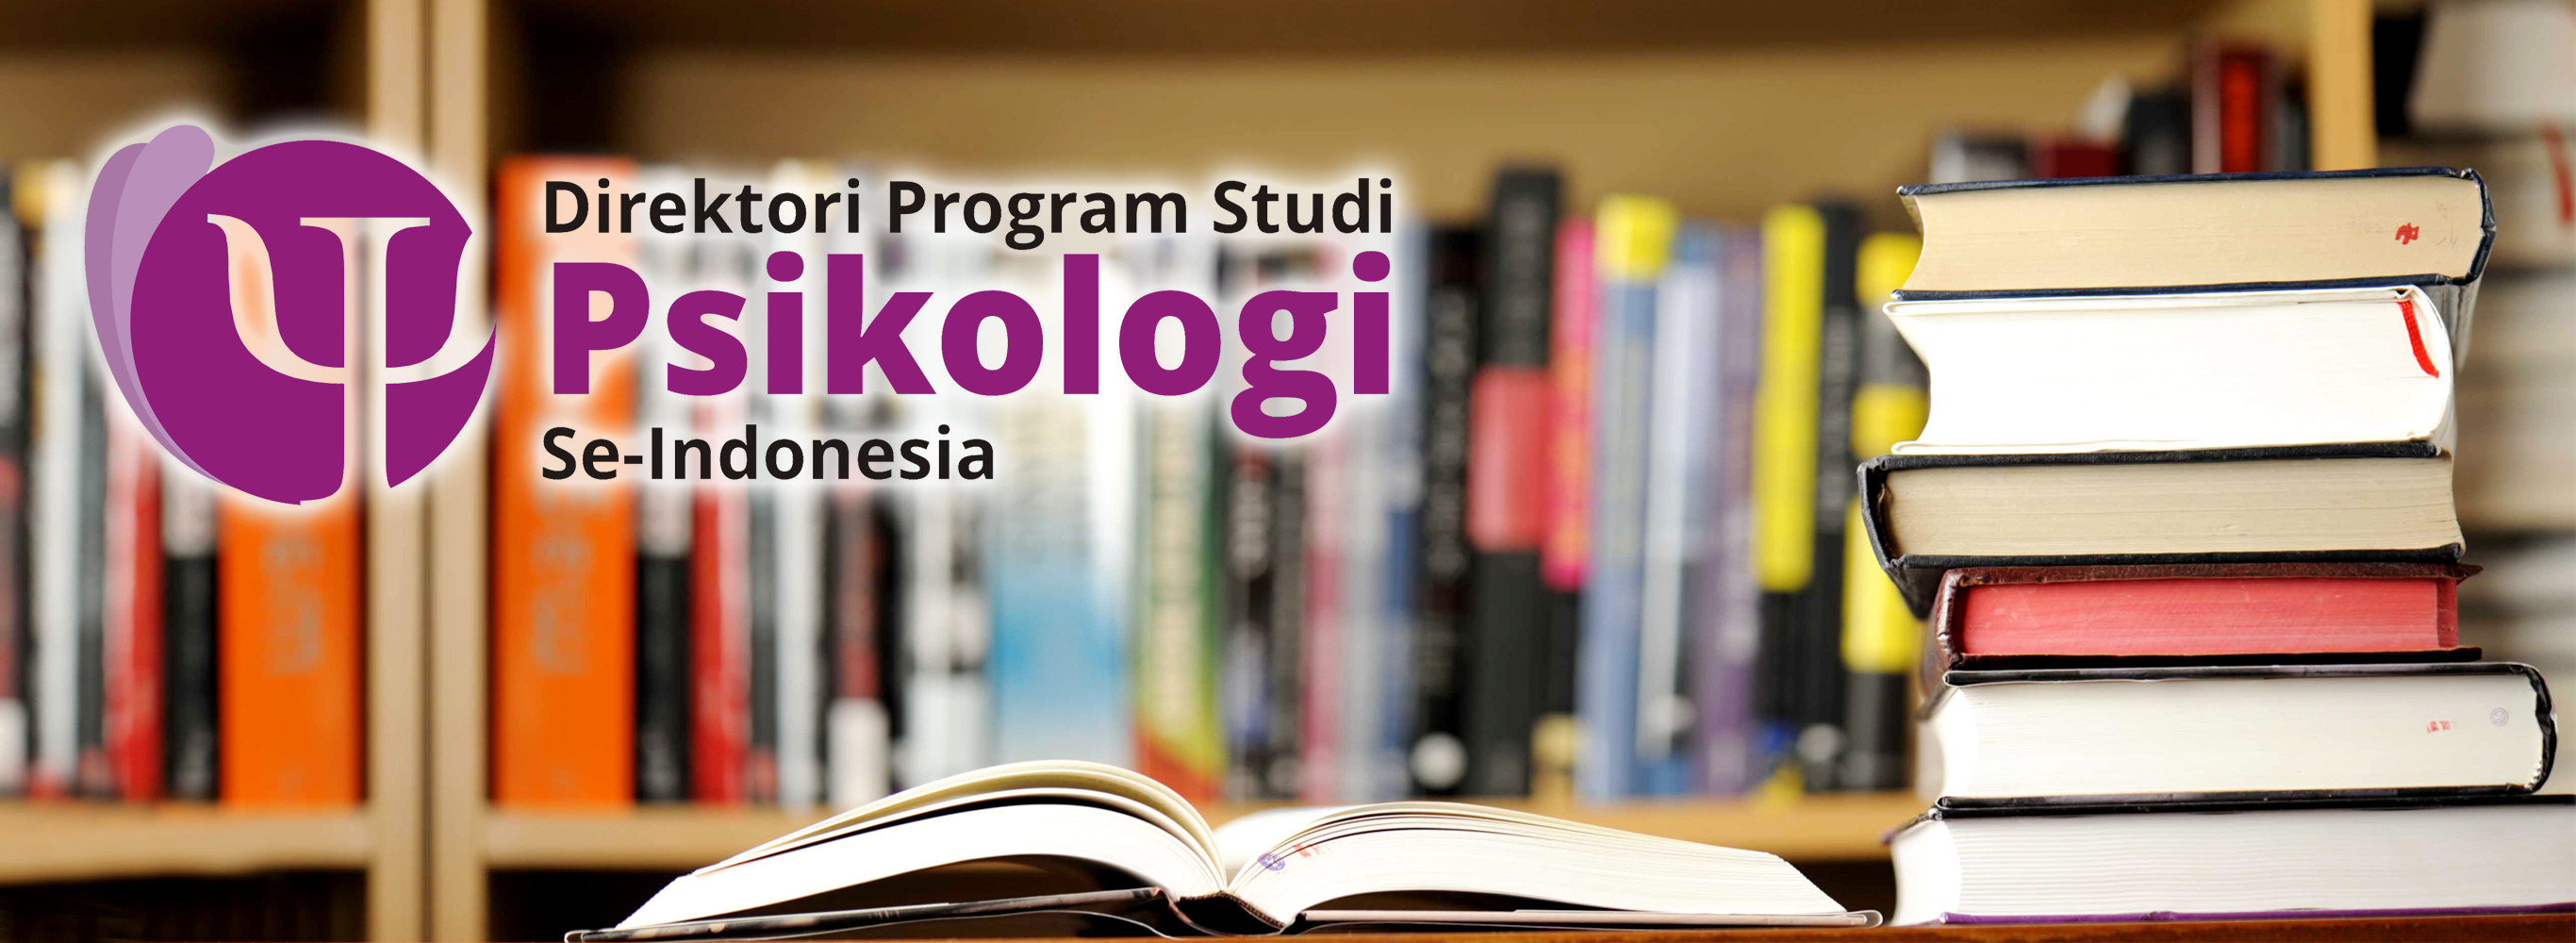 Direktori online Program Studi Psikologi se Indonesia ini menyediakan 176 informasi yang berupa halaman website mengenai Program Studi Psikologi di